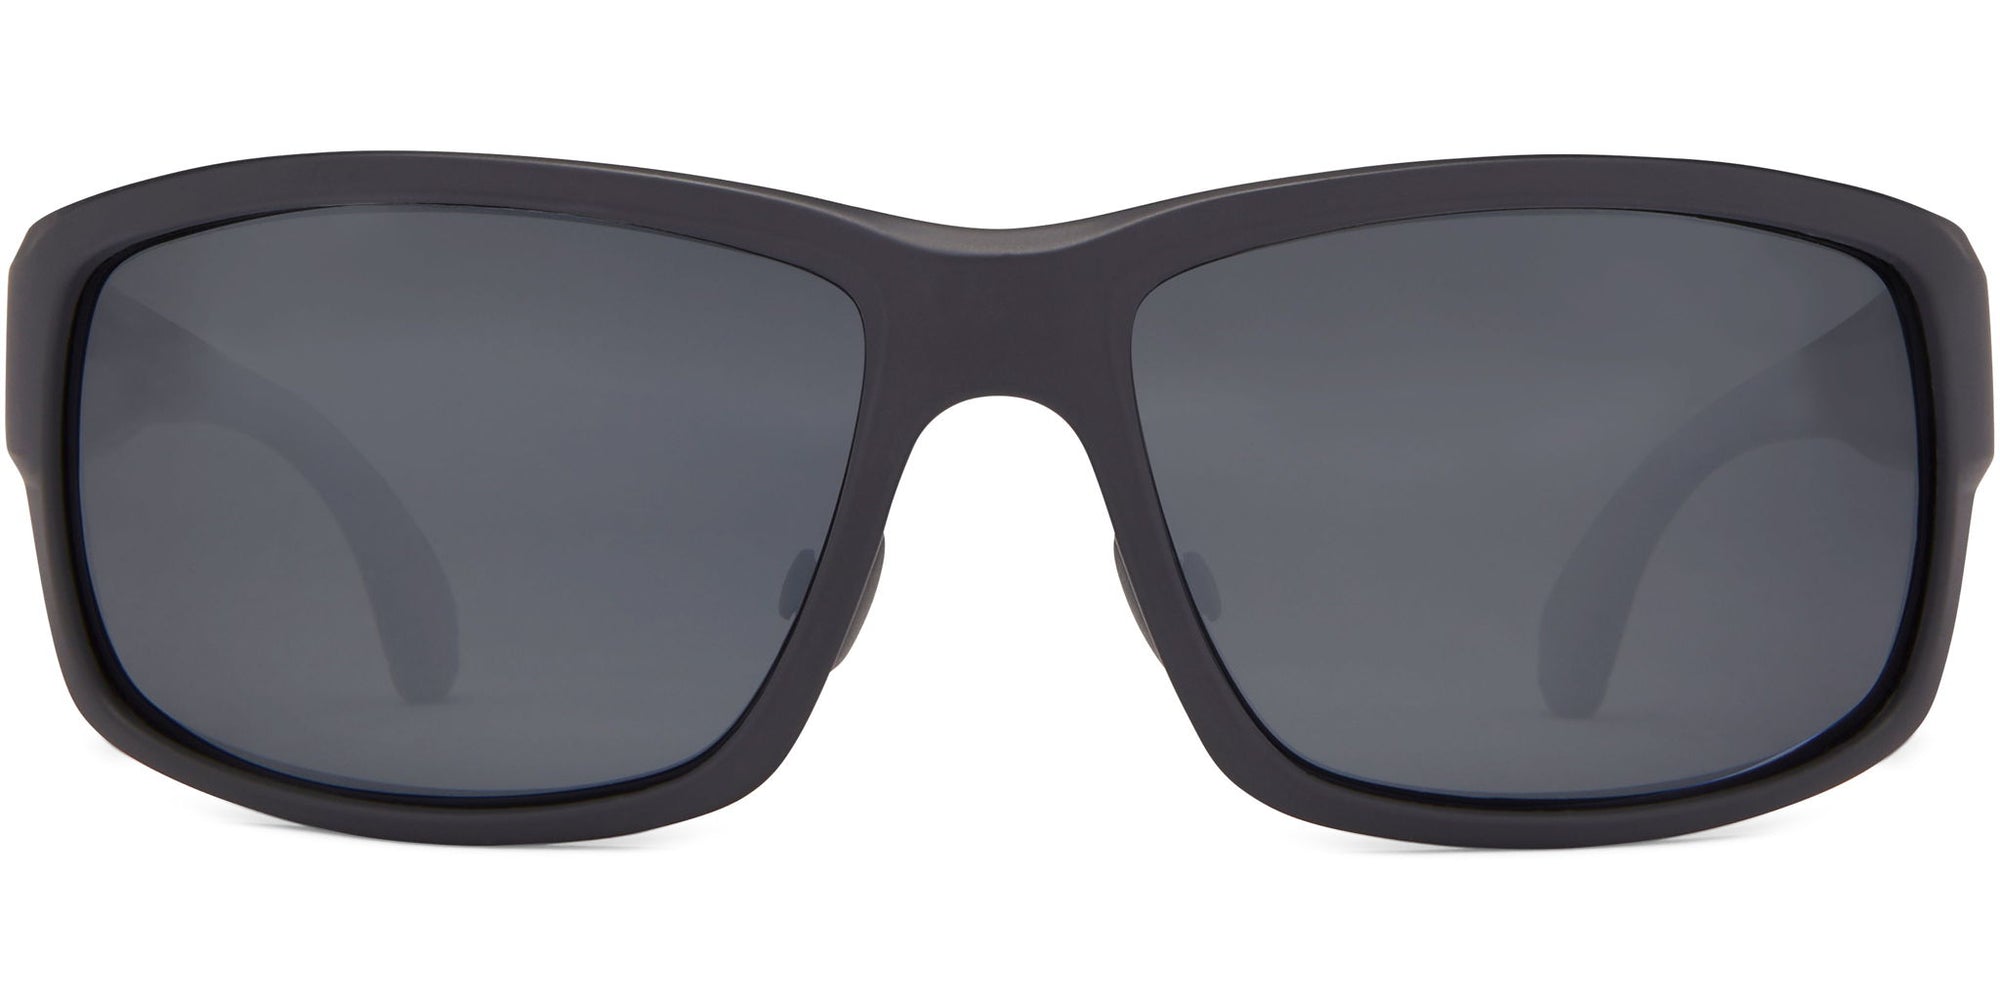 Dallas - Black/Gray Lens - Sunglasses